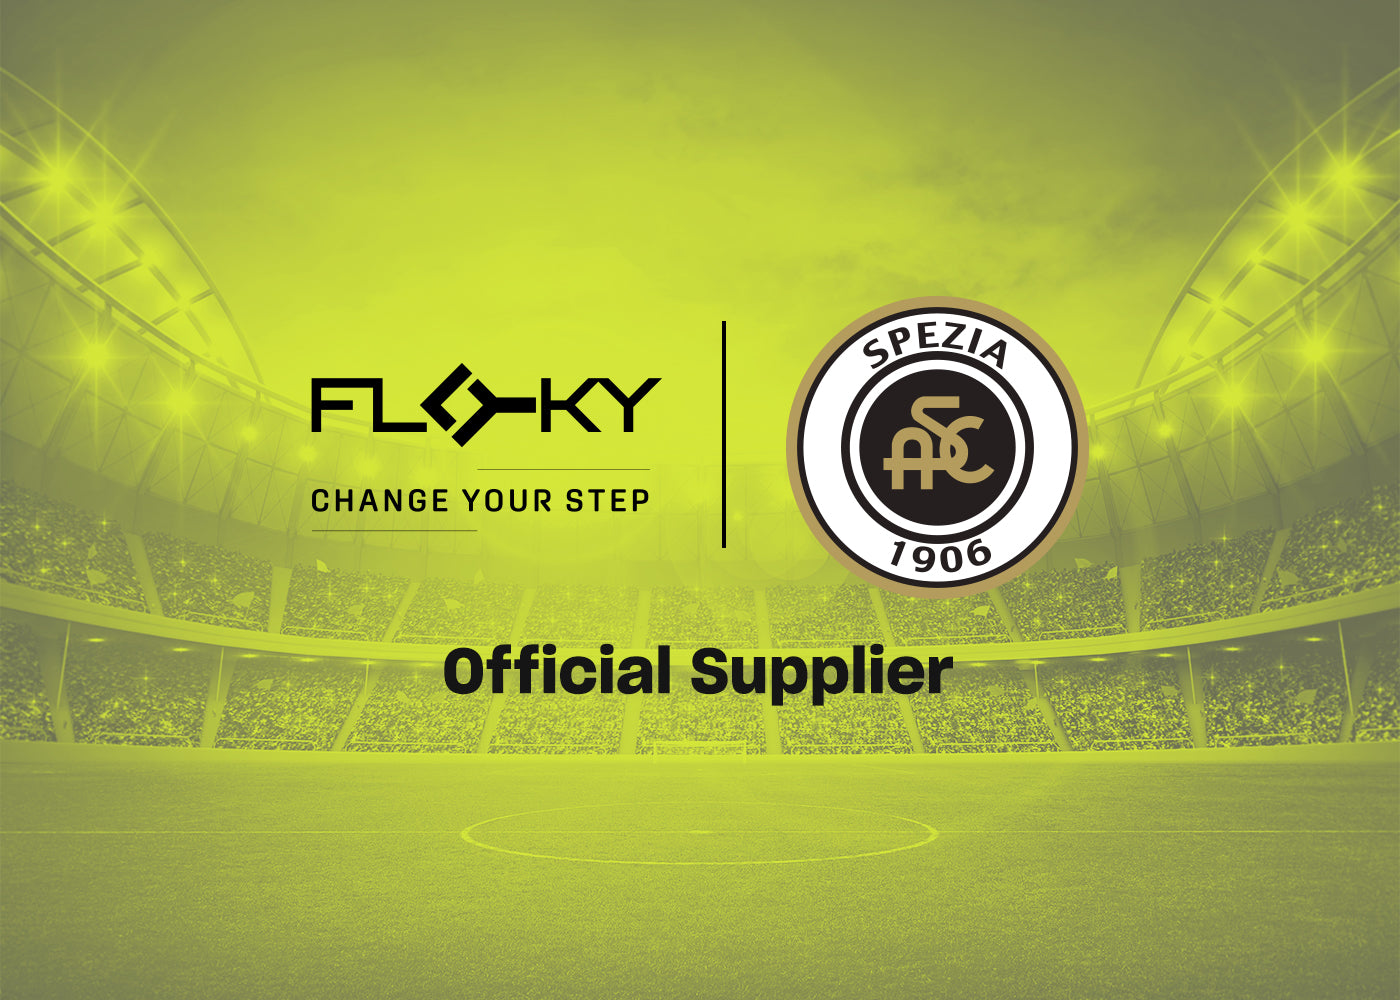 Una storia di impegno, passione e rivalsa: FLOKY Official Supplier di Spezia Calcio